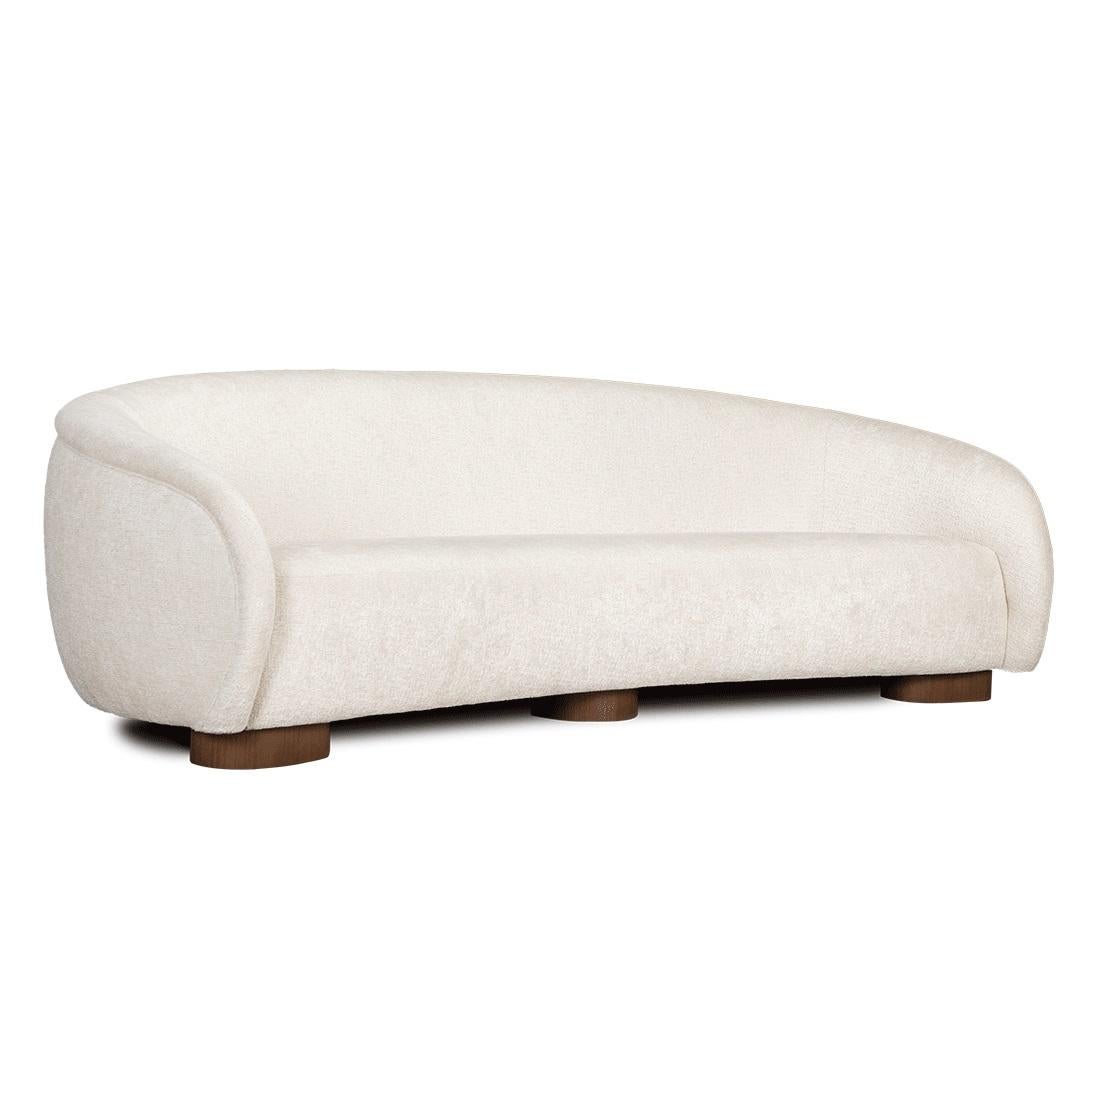 Dieses außergewöhnliche Sofa bietet Ihnen mehr Kurven und Komfort. Dieses Sofa ist mit vier 45x45-Kissen ausgestattet und hat eine Struktur aus Massivholz mit Füßen in Standardausführungen.
Wir tun unser Bestes, um die Produktion zu beschleunigen